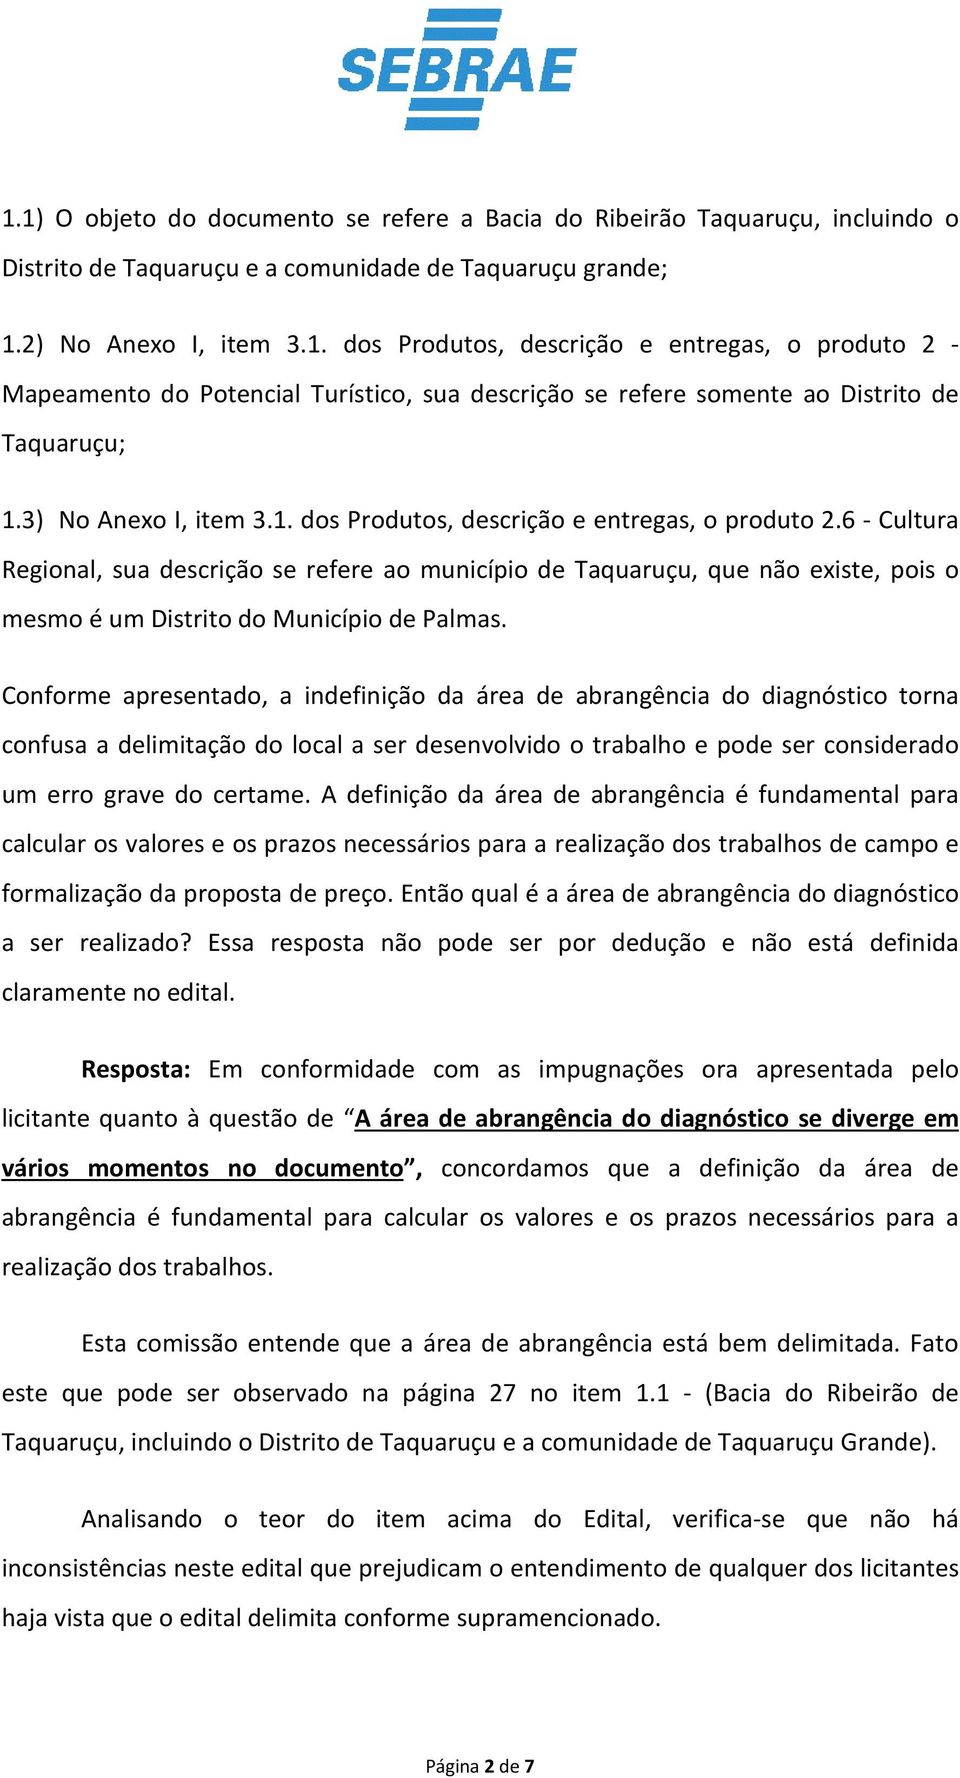 6 - Cultura Regional, sua descrição se refere ao município de Taquaruçu, que não existe, pois o mesmo é um Distrito do Município de Palmas.